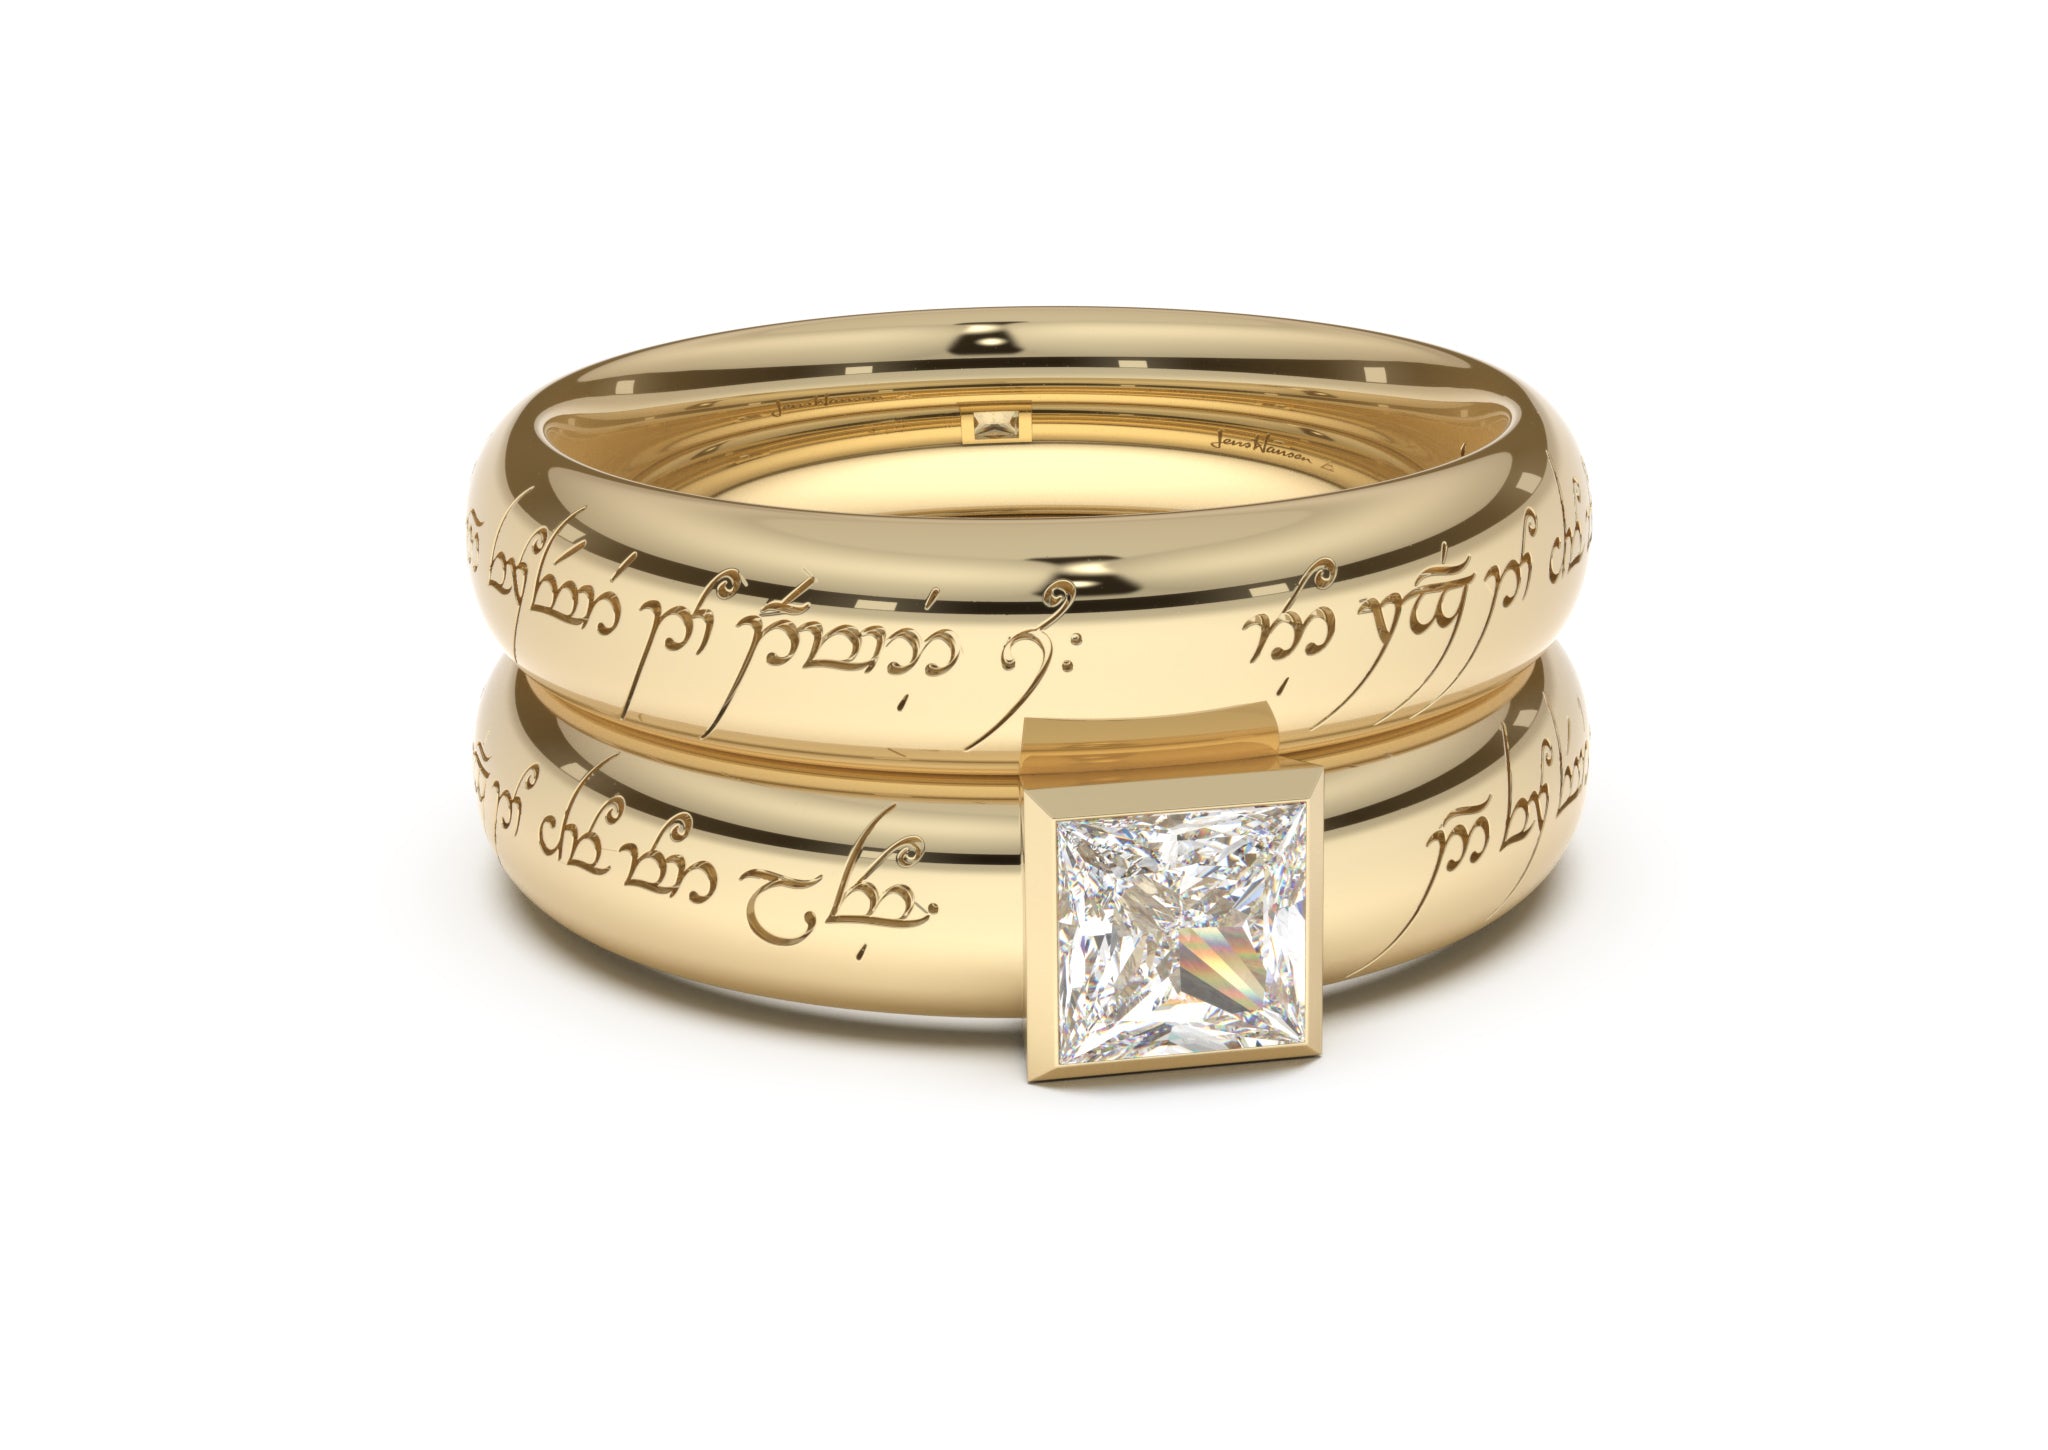 चांदी में ब्यूटीफुल जेंट्स अंगूठियों के डिज़ाइन कीमत के साथ || Silver gents ring  design with price - YouTube